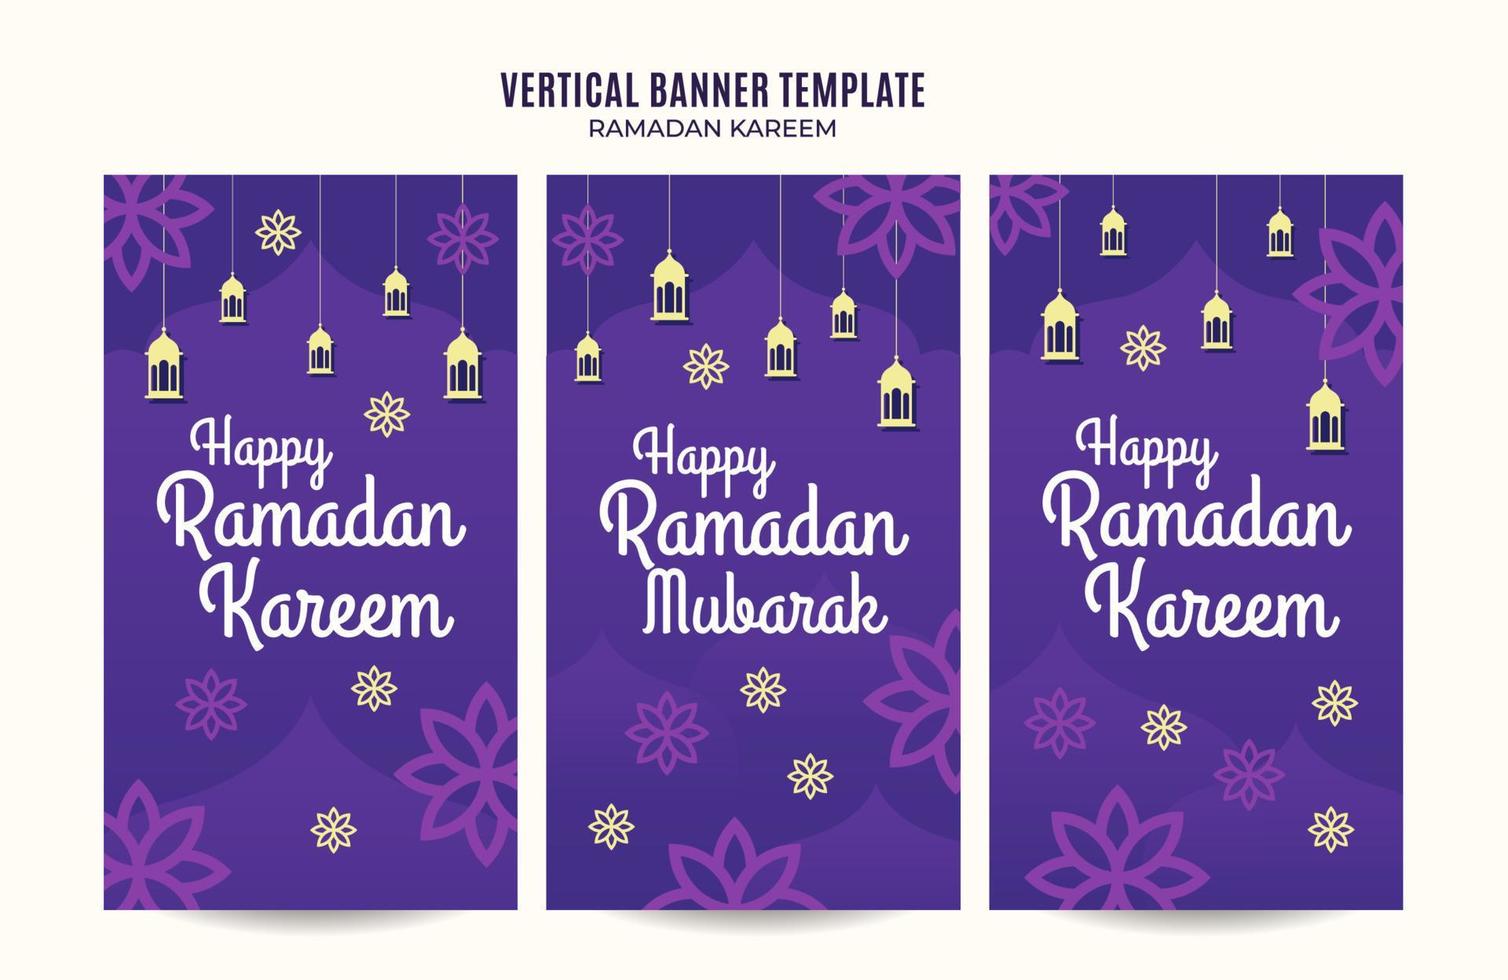 espace et arrière-plan de la bannière web verticale ramadan kareem vecteur